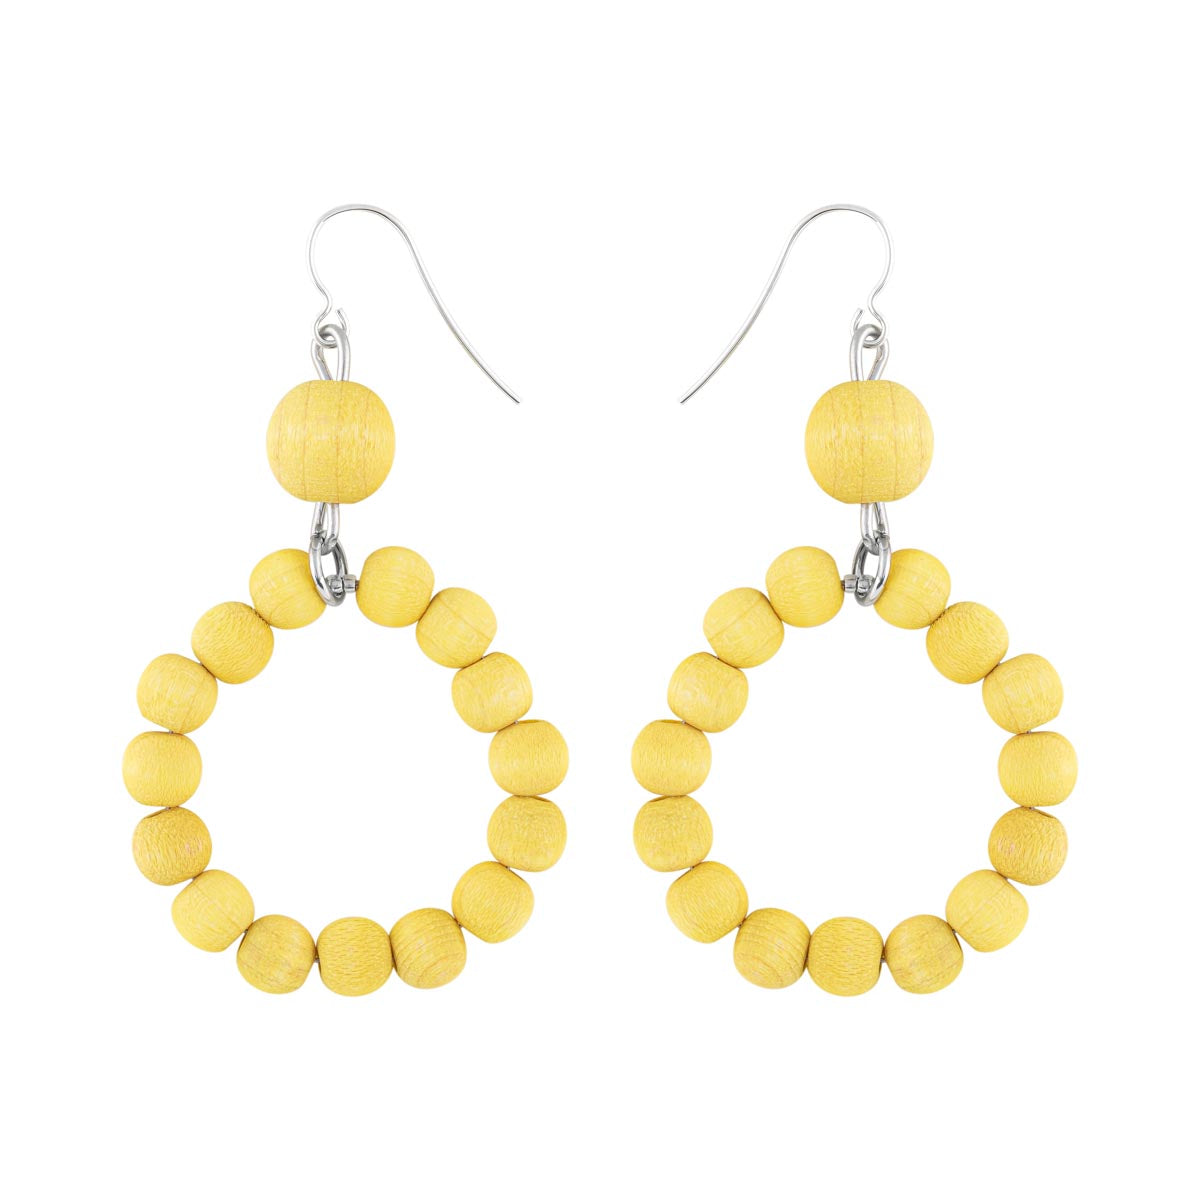 Orvokki earrings, citron yellow